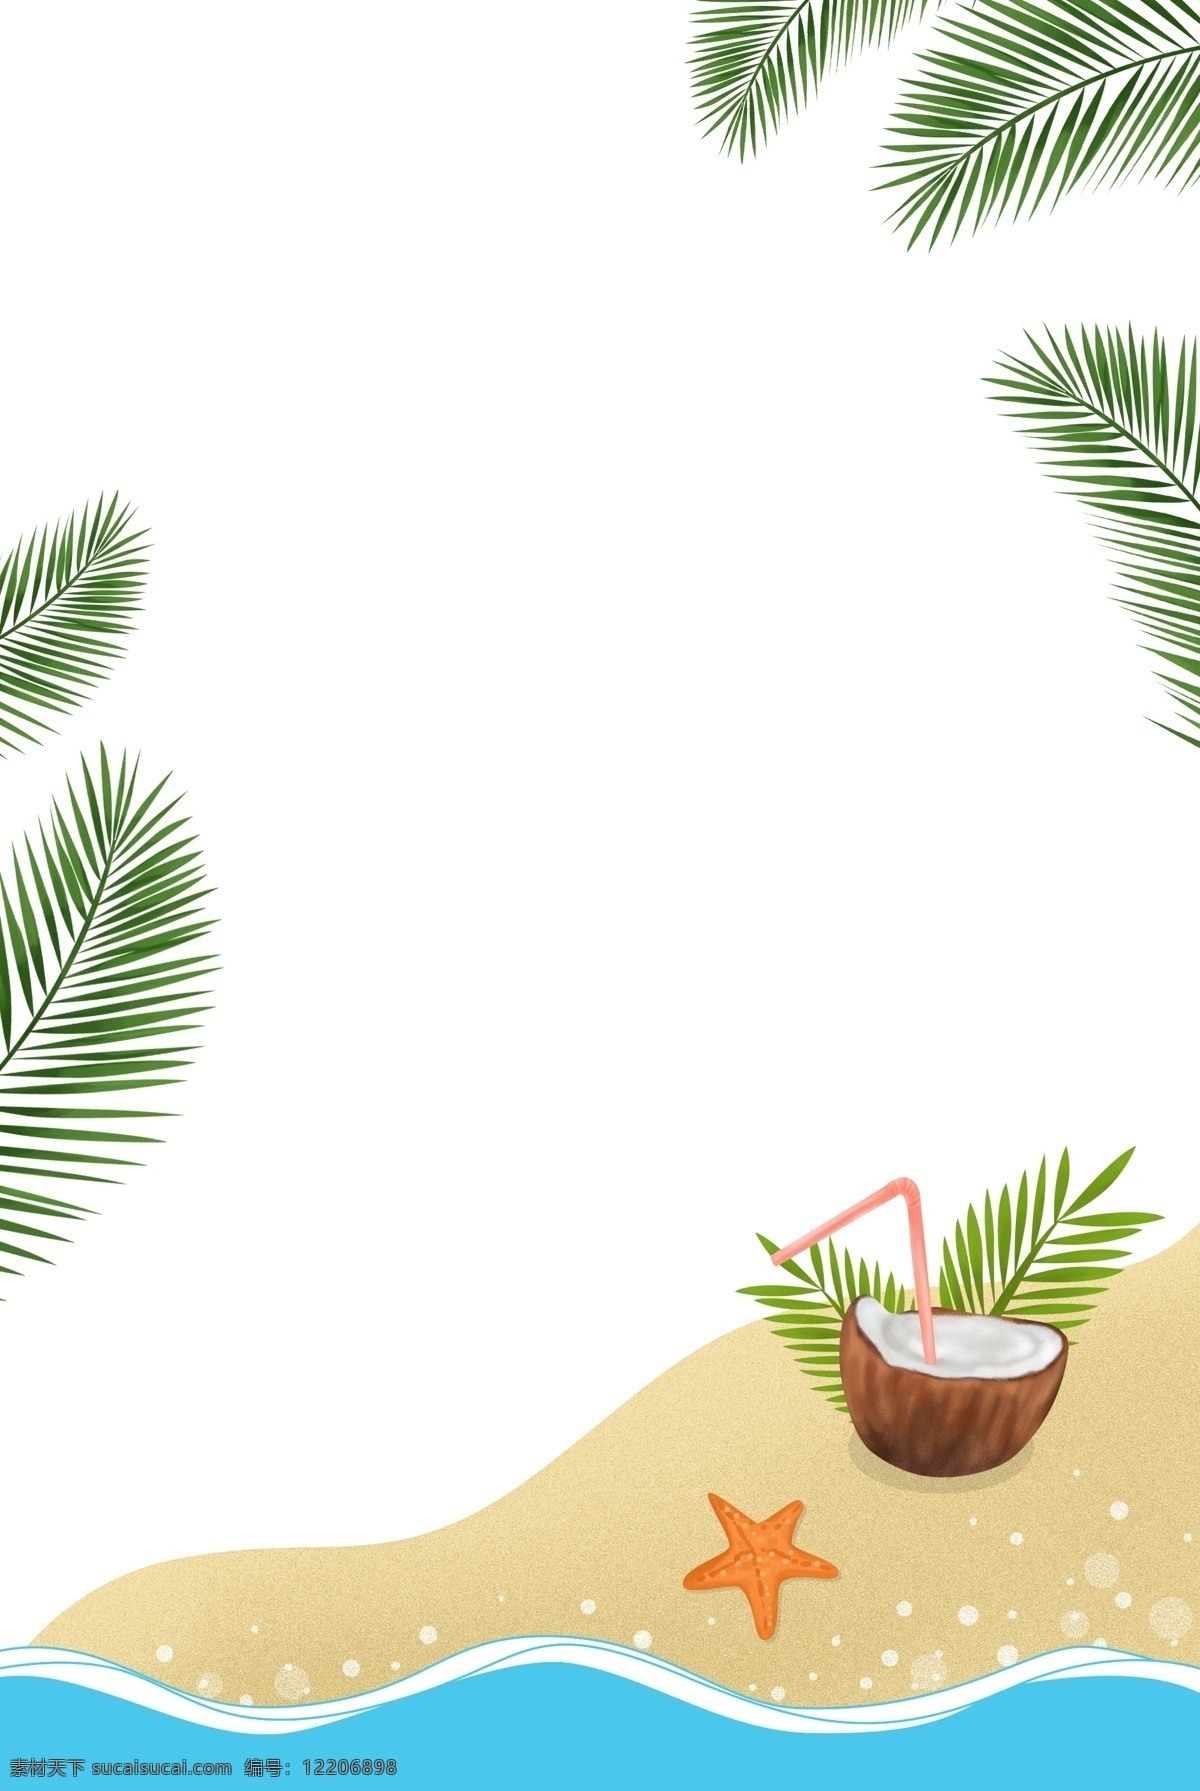 夏天 清新 海报 边框 椰子树 叶子 椰汁 果汁 沙滩 大海 海星 植物边框 海报装饰 清凉 植物 椰子叶